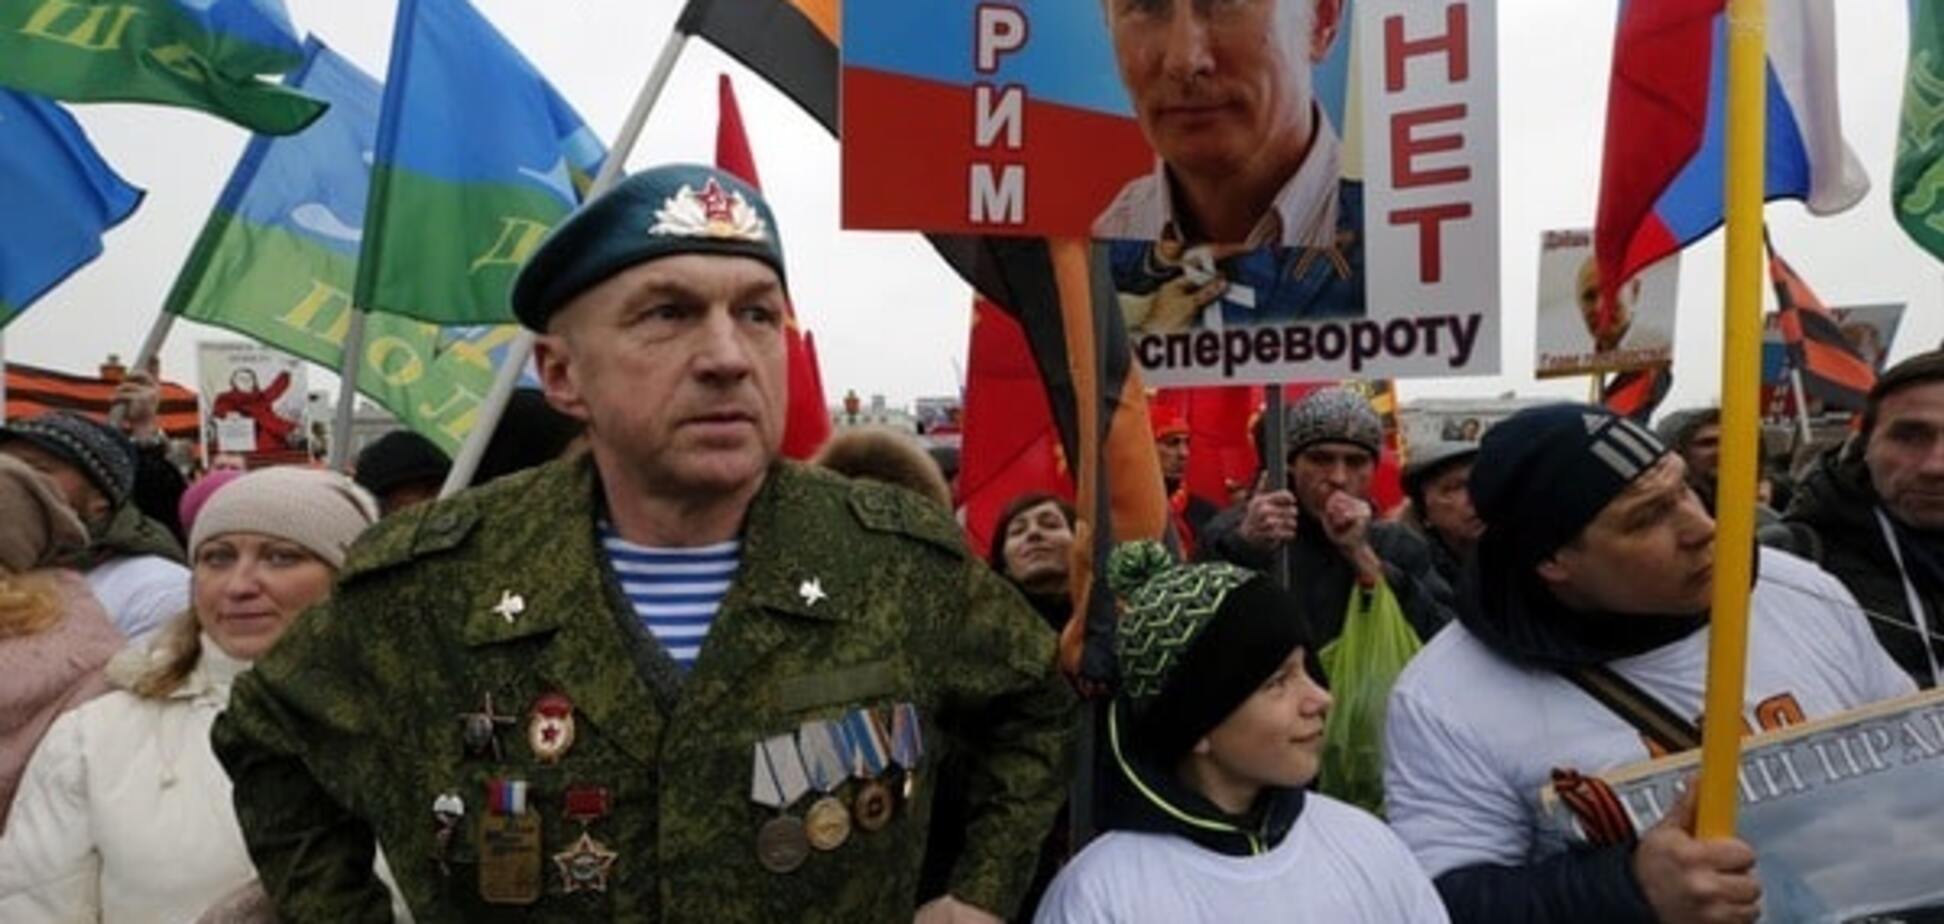 Москвичи пожаловались на кризис, но готовы терпеть 'ради Путина': видеофакт